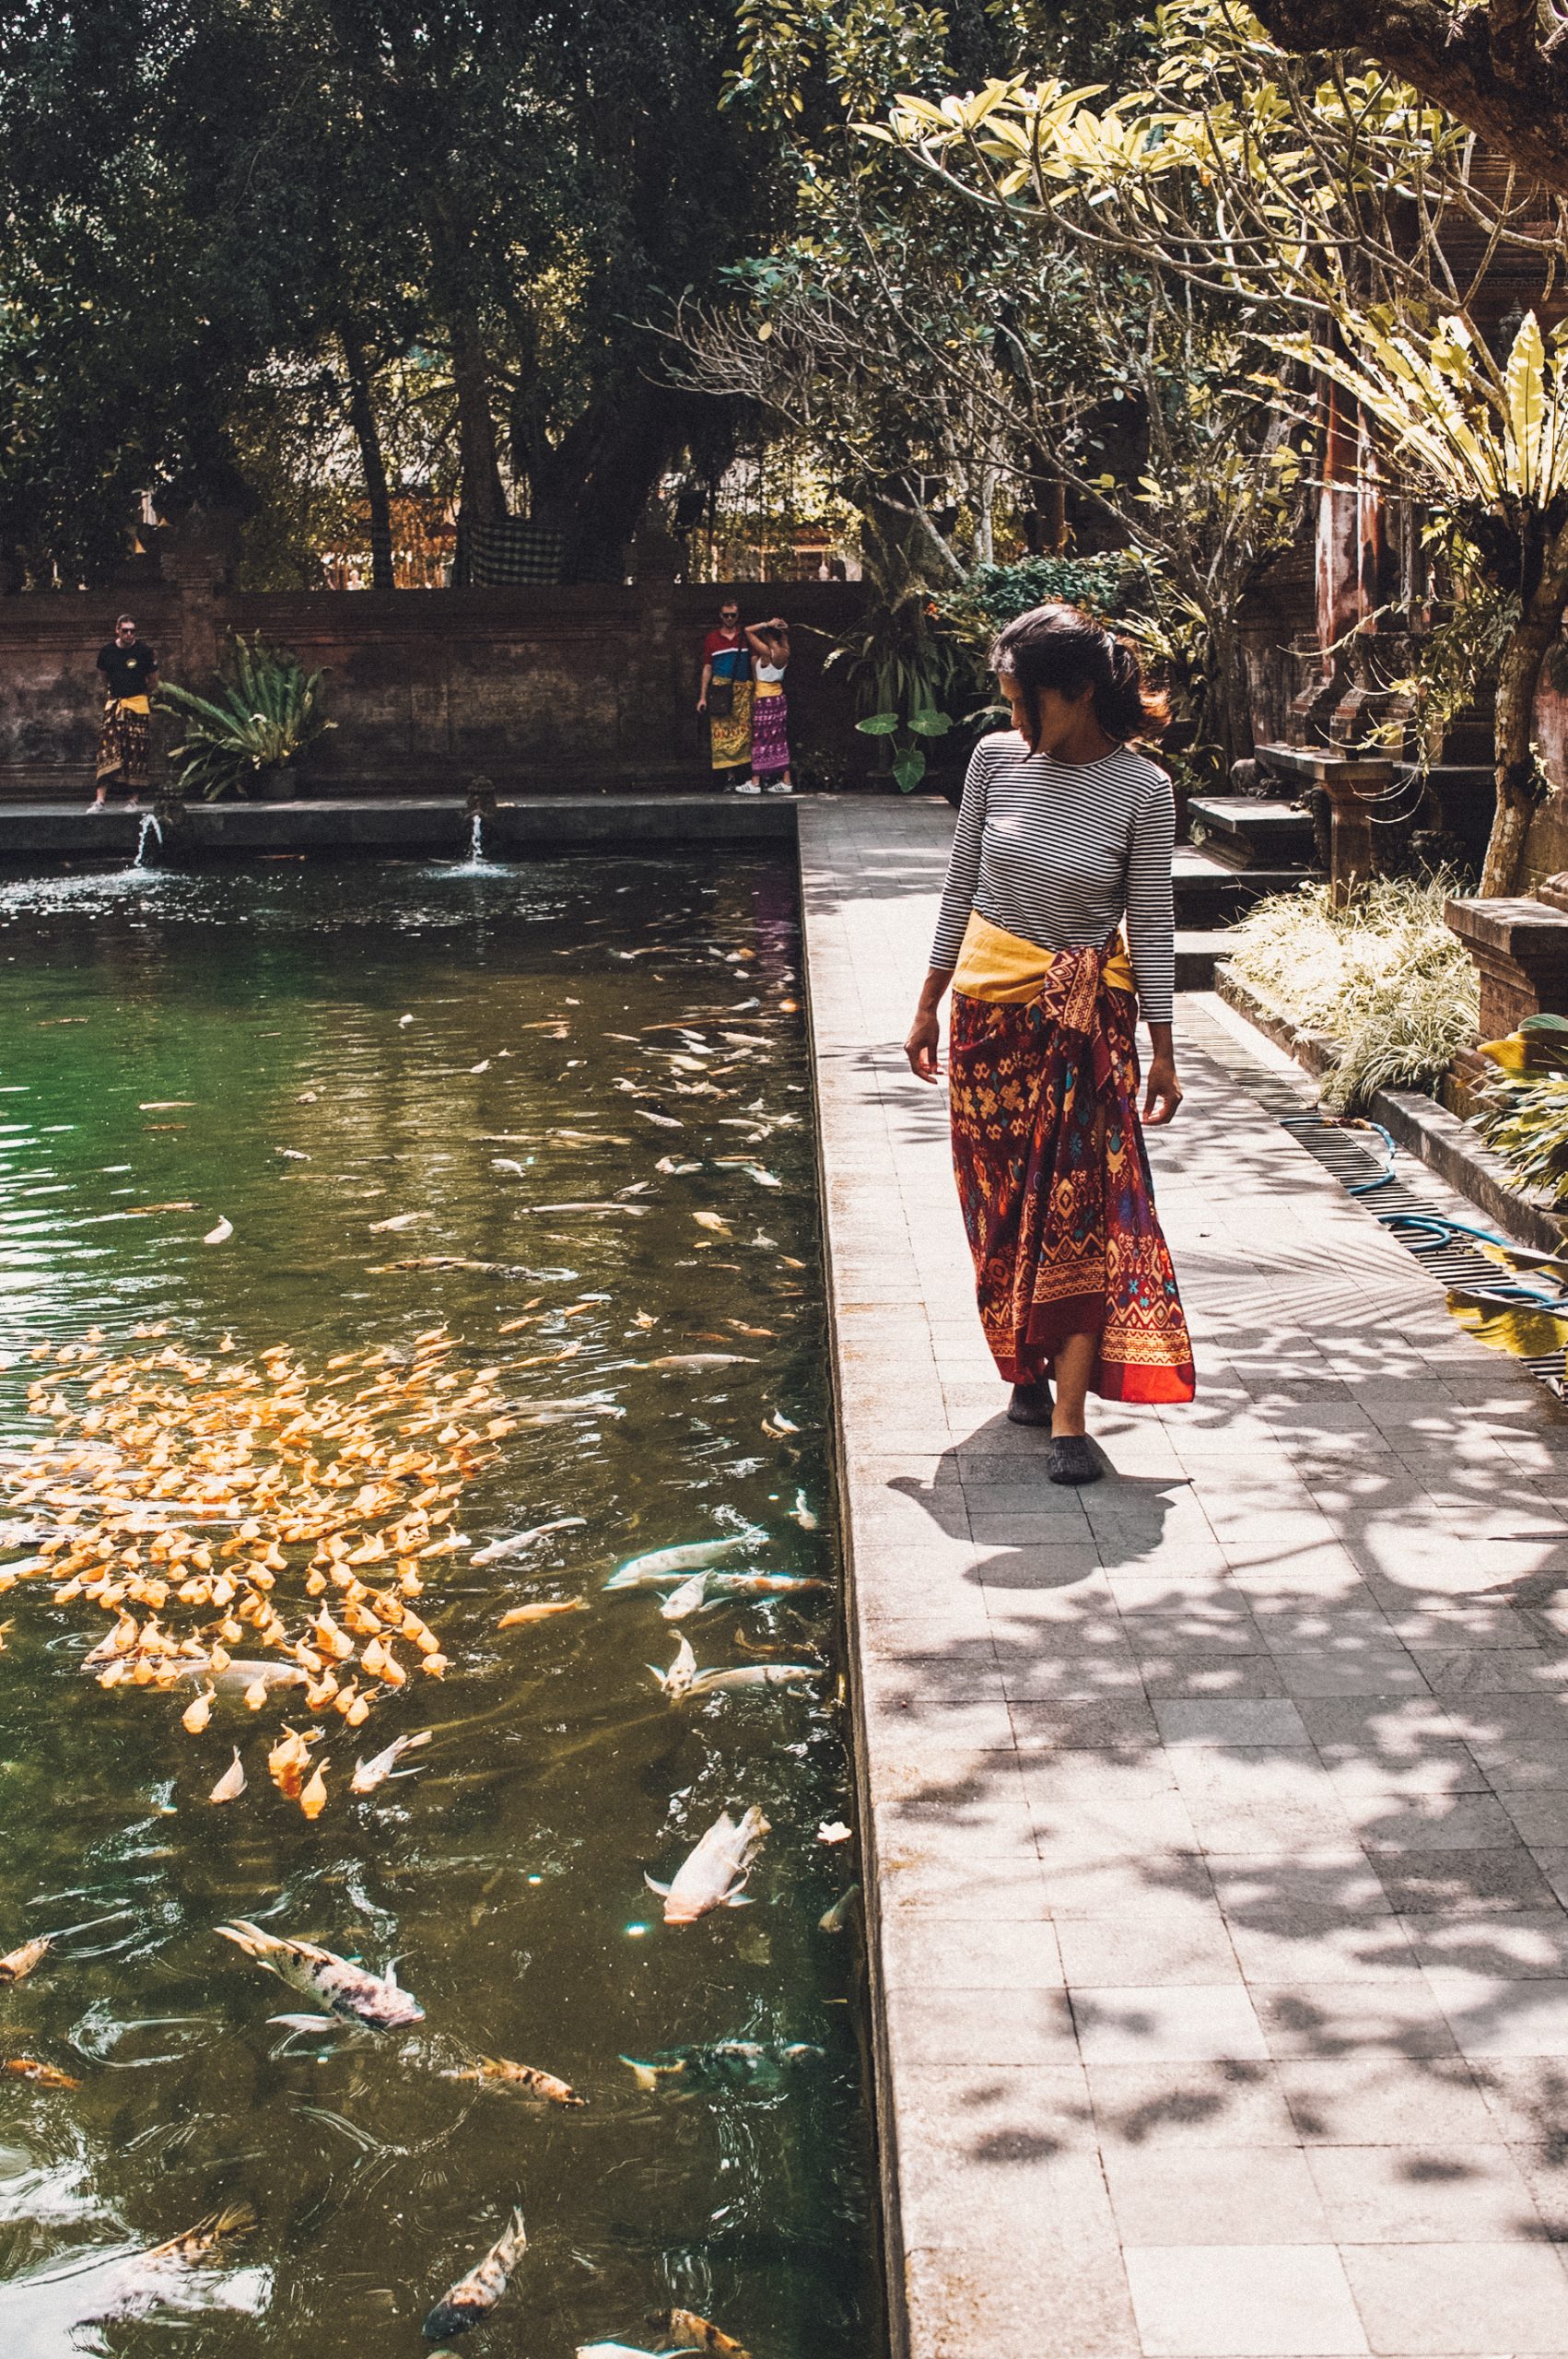 Pura Tirta Empul fish pond in Ubud, Bali